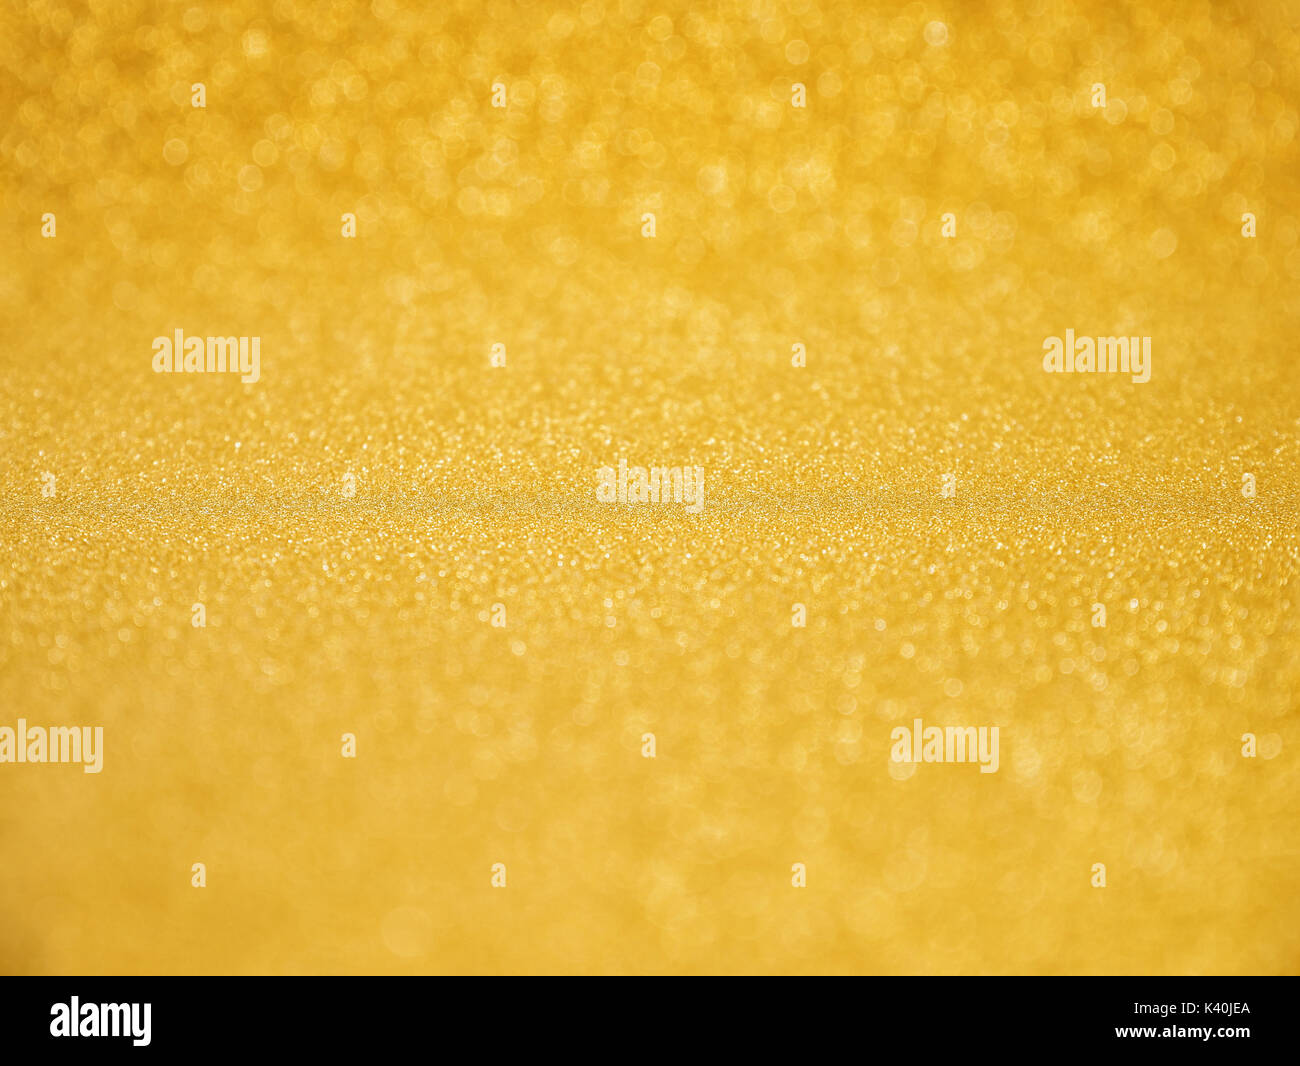 Gold Glitter Background pour célébrer Noël fond rougeoyant Banque D'Images